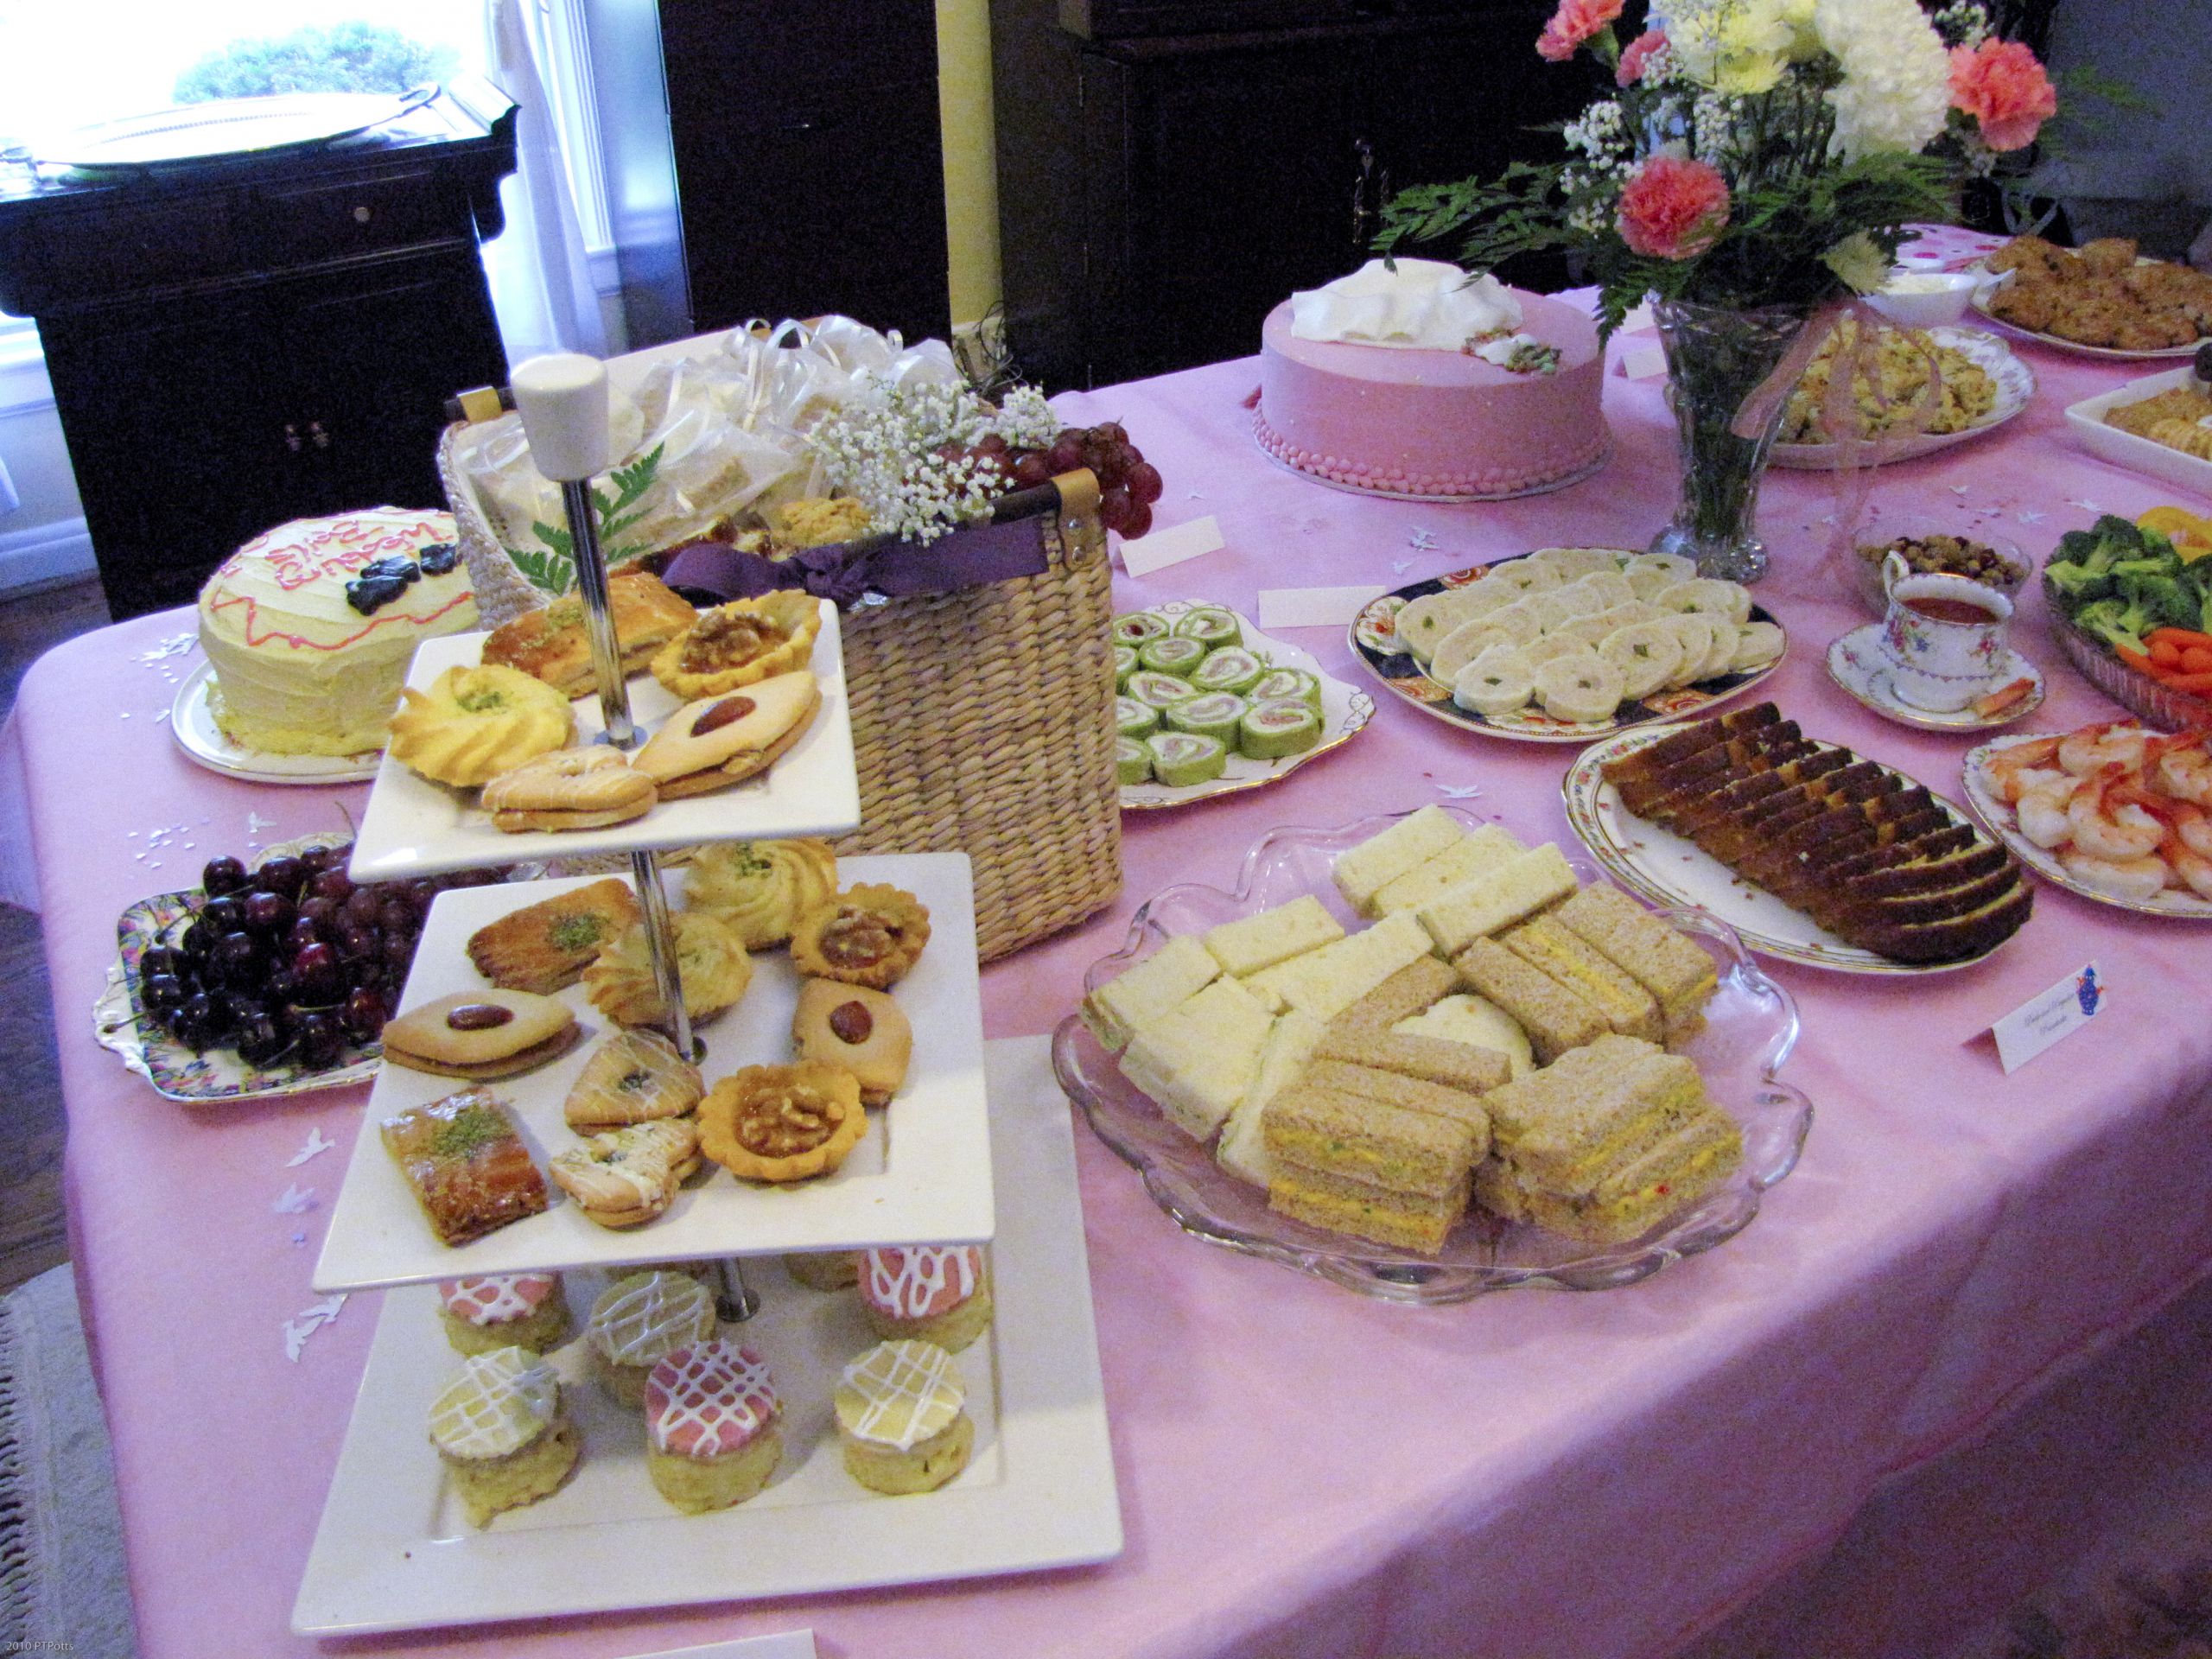 Tea Party Menu Ideas
 A Jane Austen Tea Party Bridal Shower